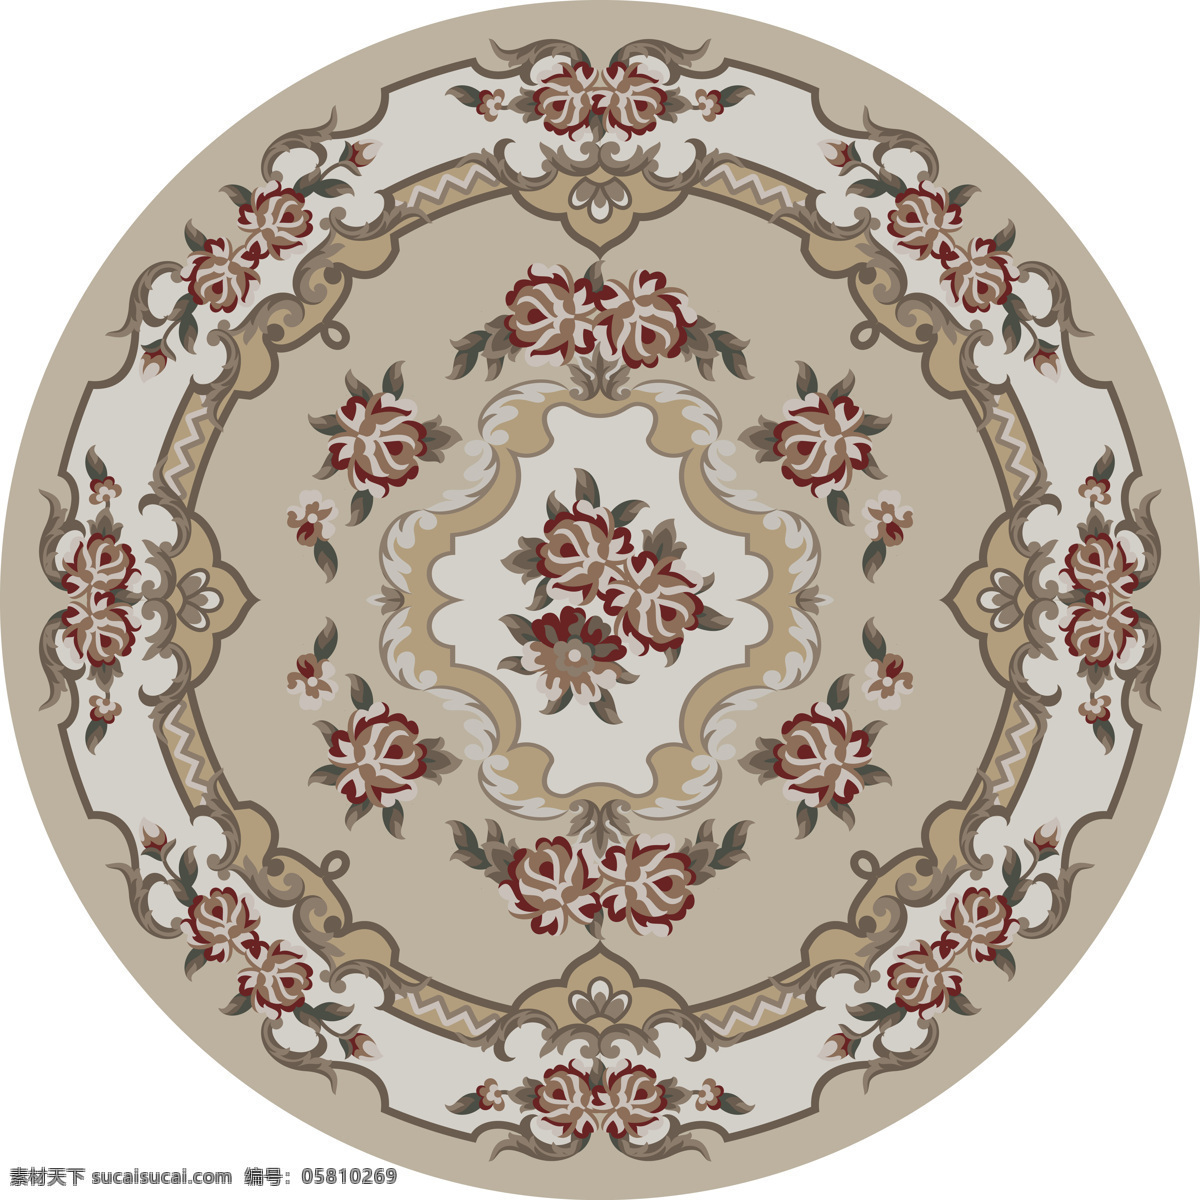 地毯设计 地毯图案设计 地毯拼花 传统图案 传统元素 玫瑰花 圆形地毯 图案 花边花纹 底纹边框